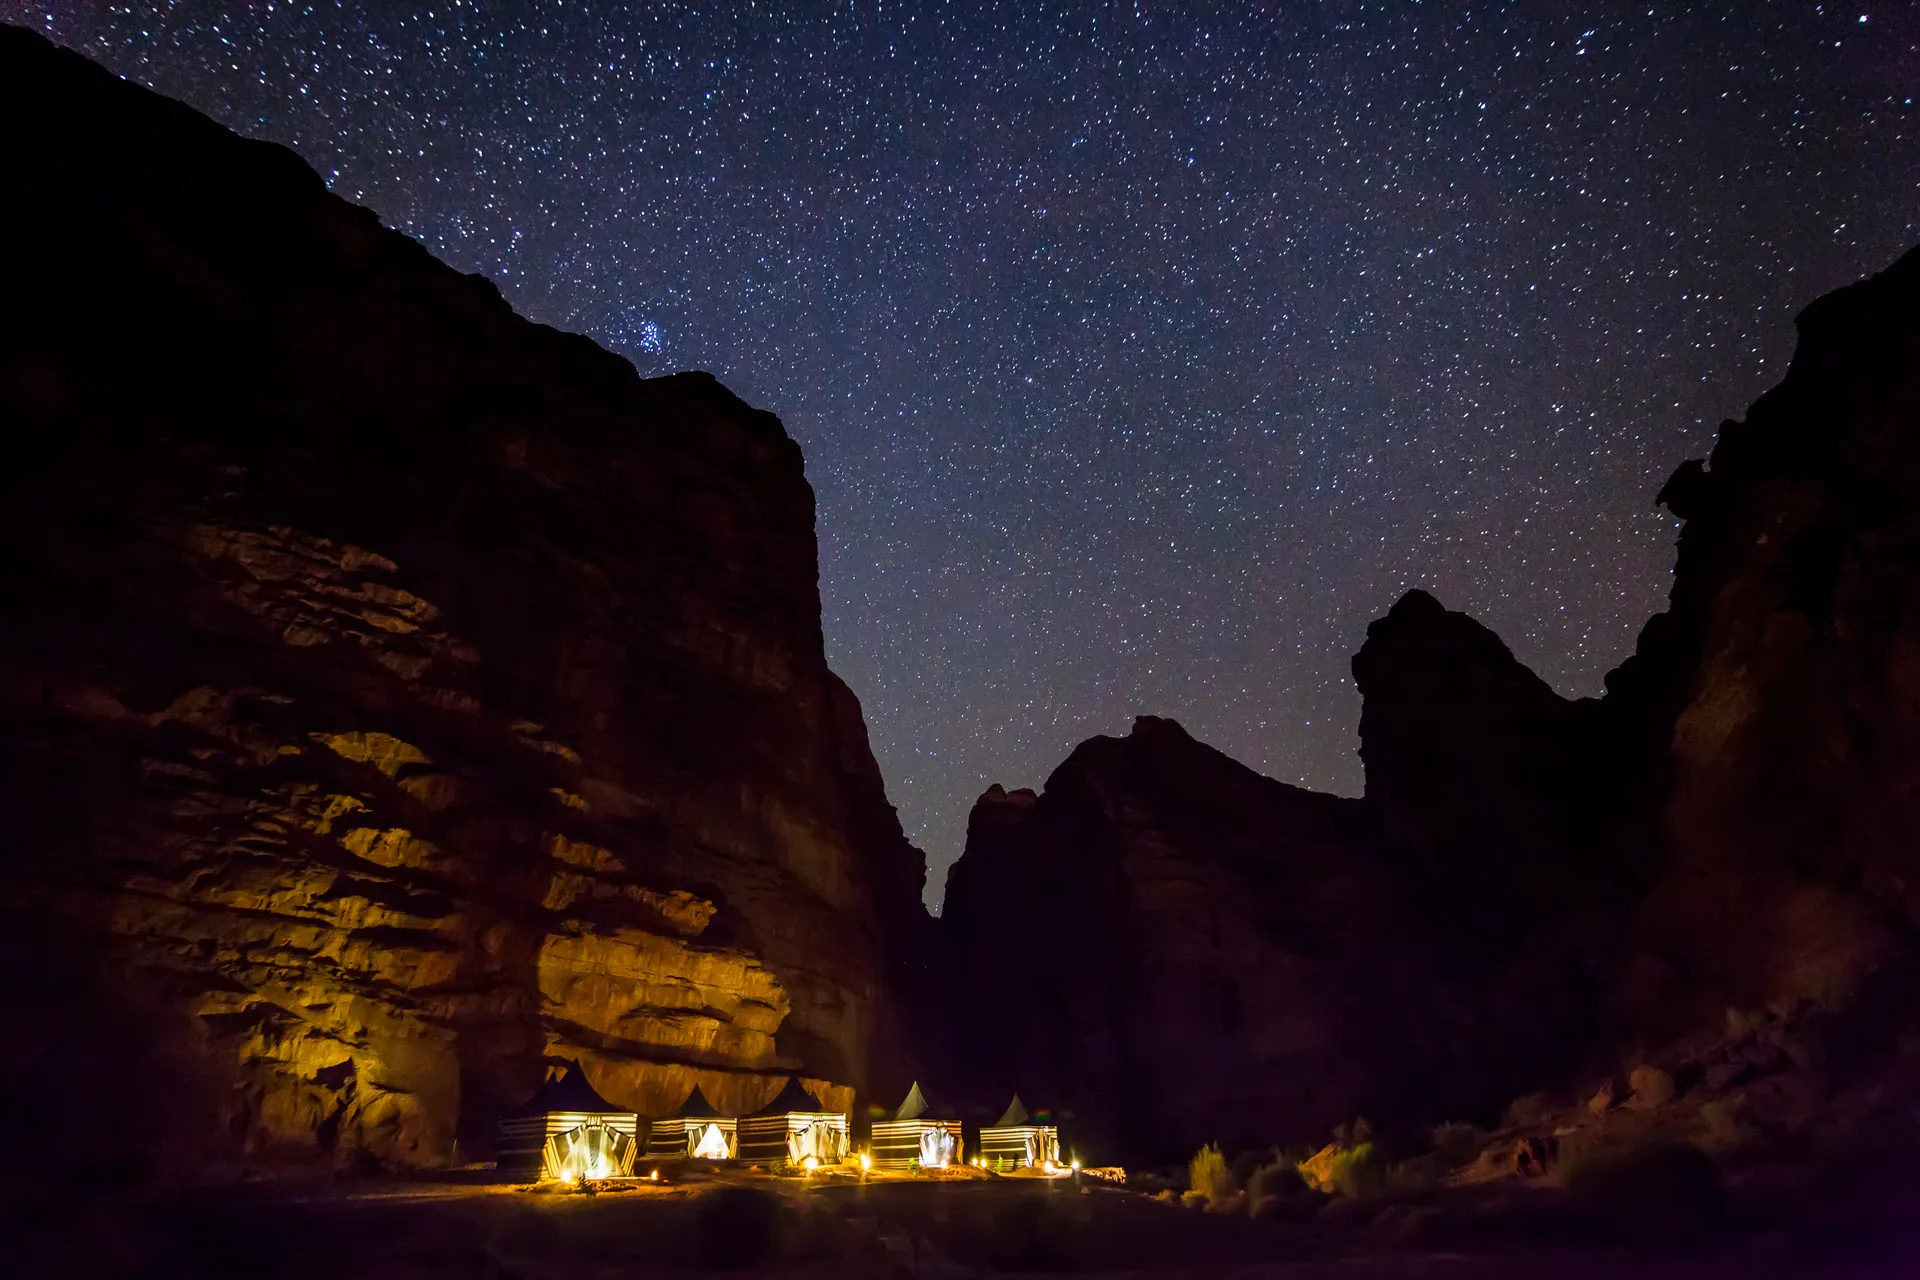 De sterrenhemel in Wadi Rum is prachtig